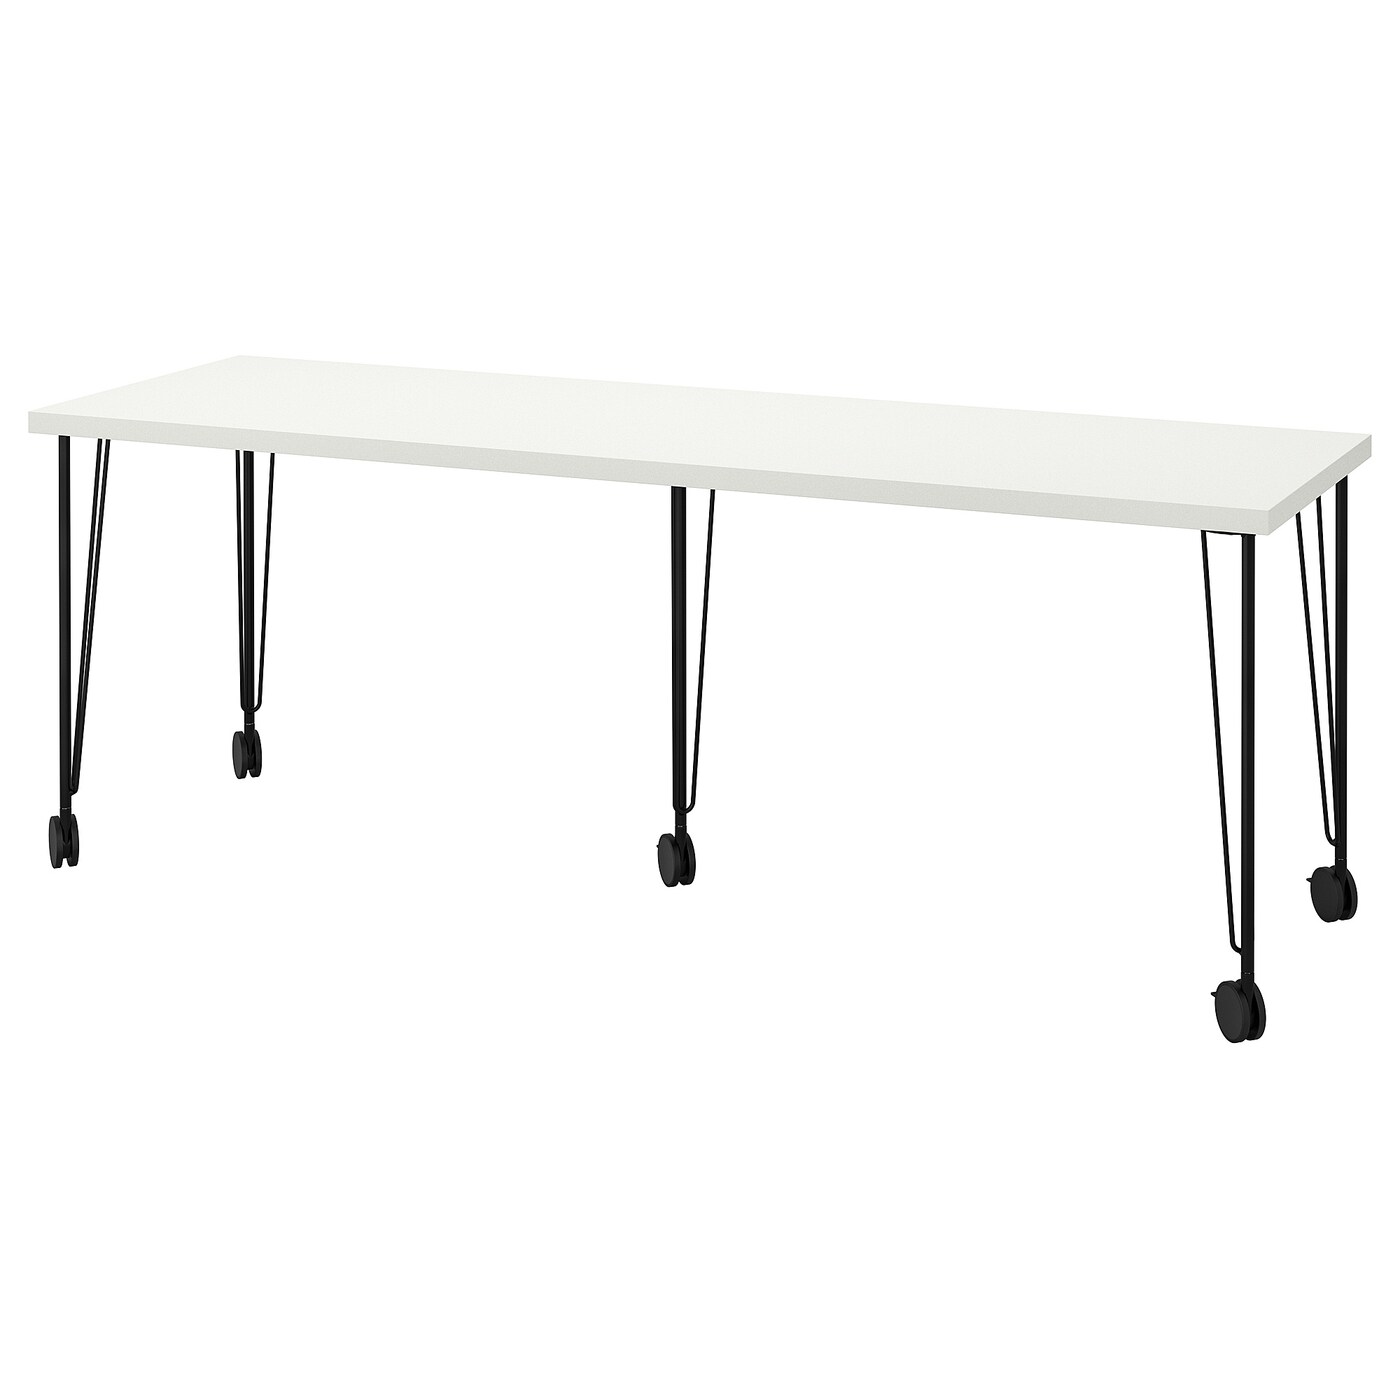 Письменный стол - IKEA LAGKAPTEN/KRILLE, 200х60 см, белый/черный, ЛАГКАПТЕН/КРИЛЛЕ ИКЕА